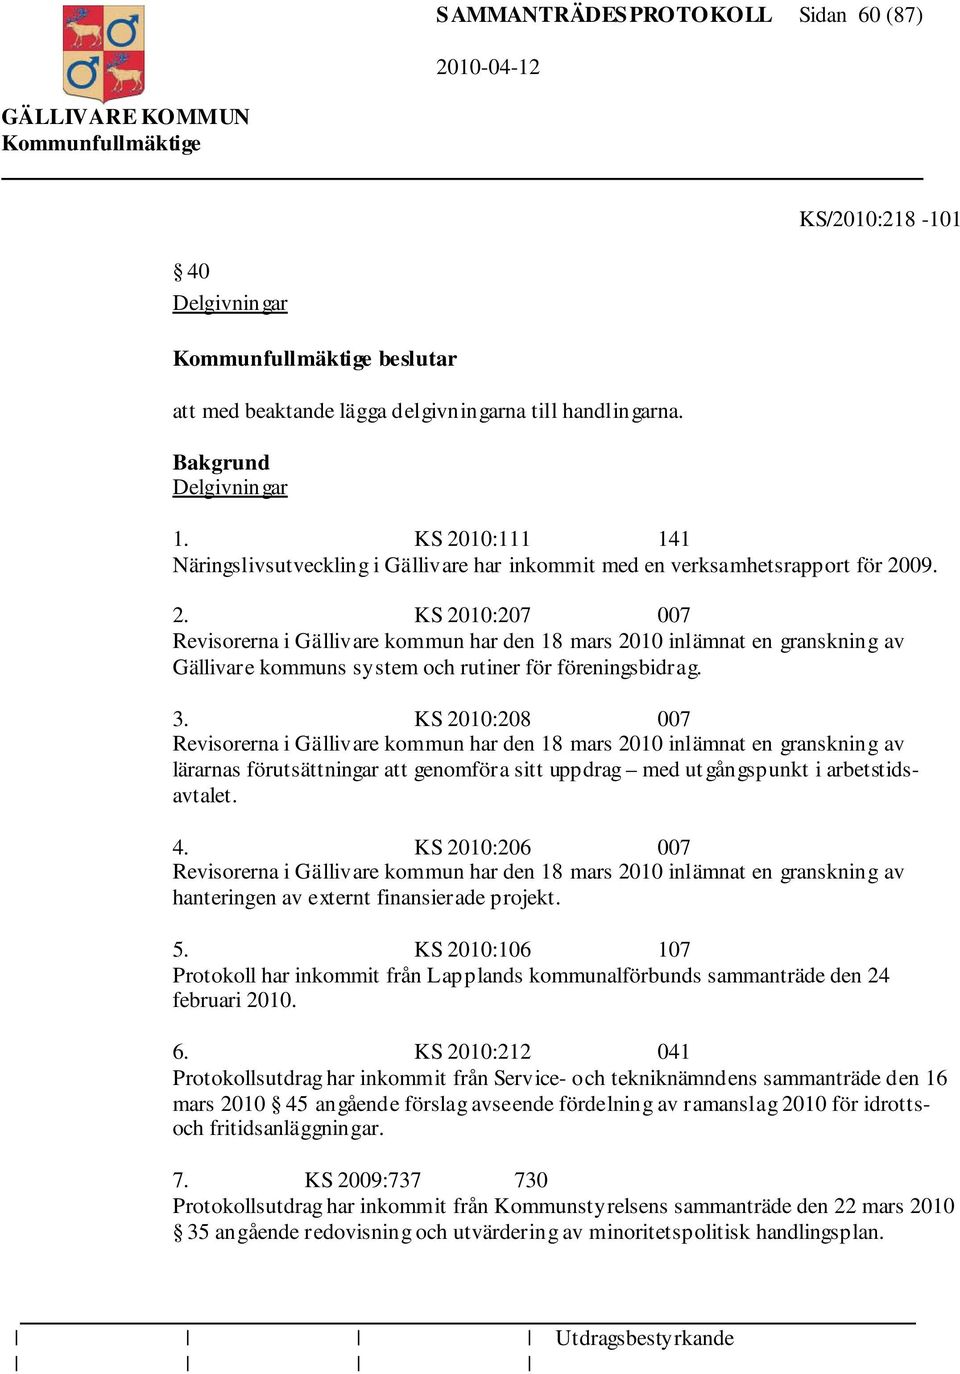 3. KS 2010:208 007 Revisorerna i Gällivare kommun har den 18 mars 2010 inlämnat en granskning av lärarnas förutsättningar att genomföra sitt uppdrag med ut gångspunkt i arbetstidsavtalet. 4.